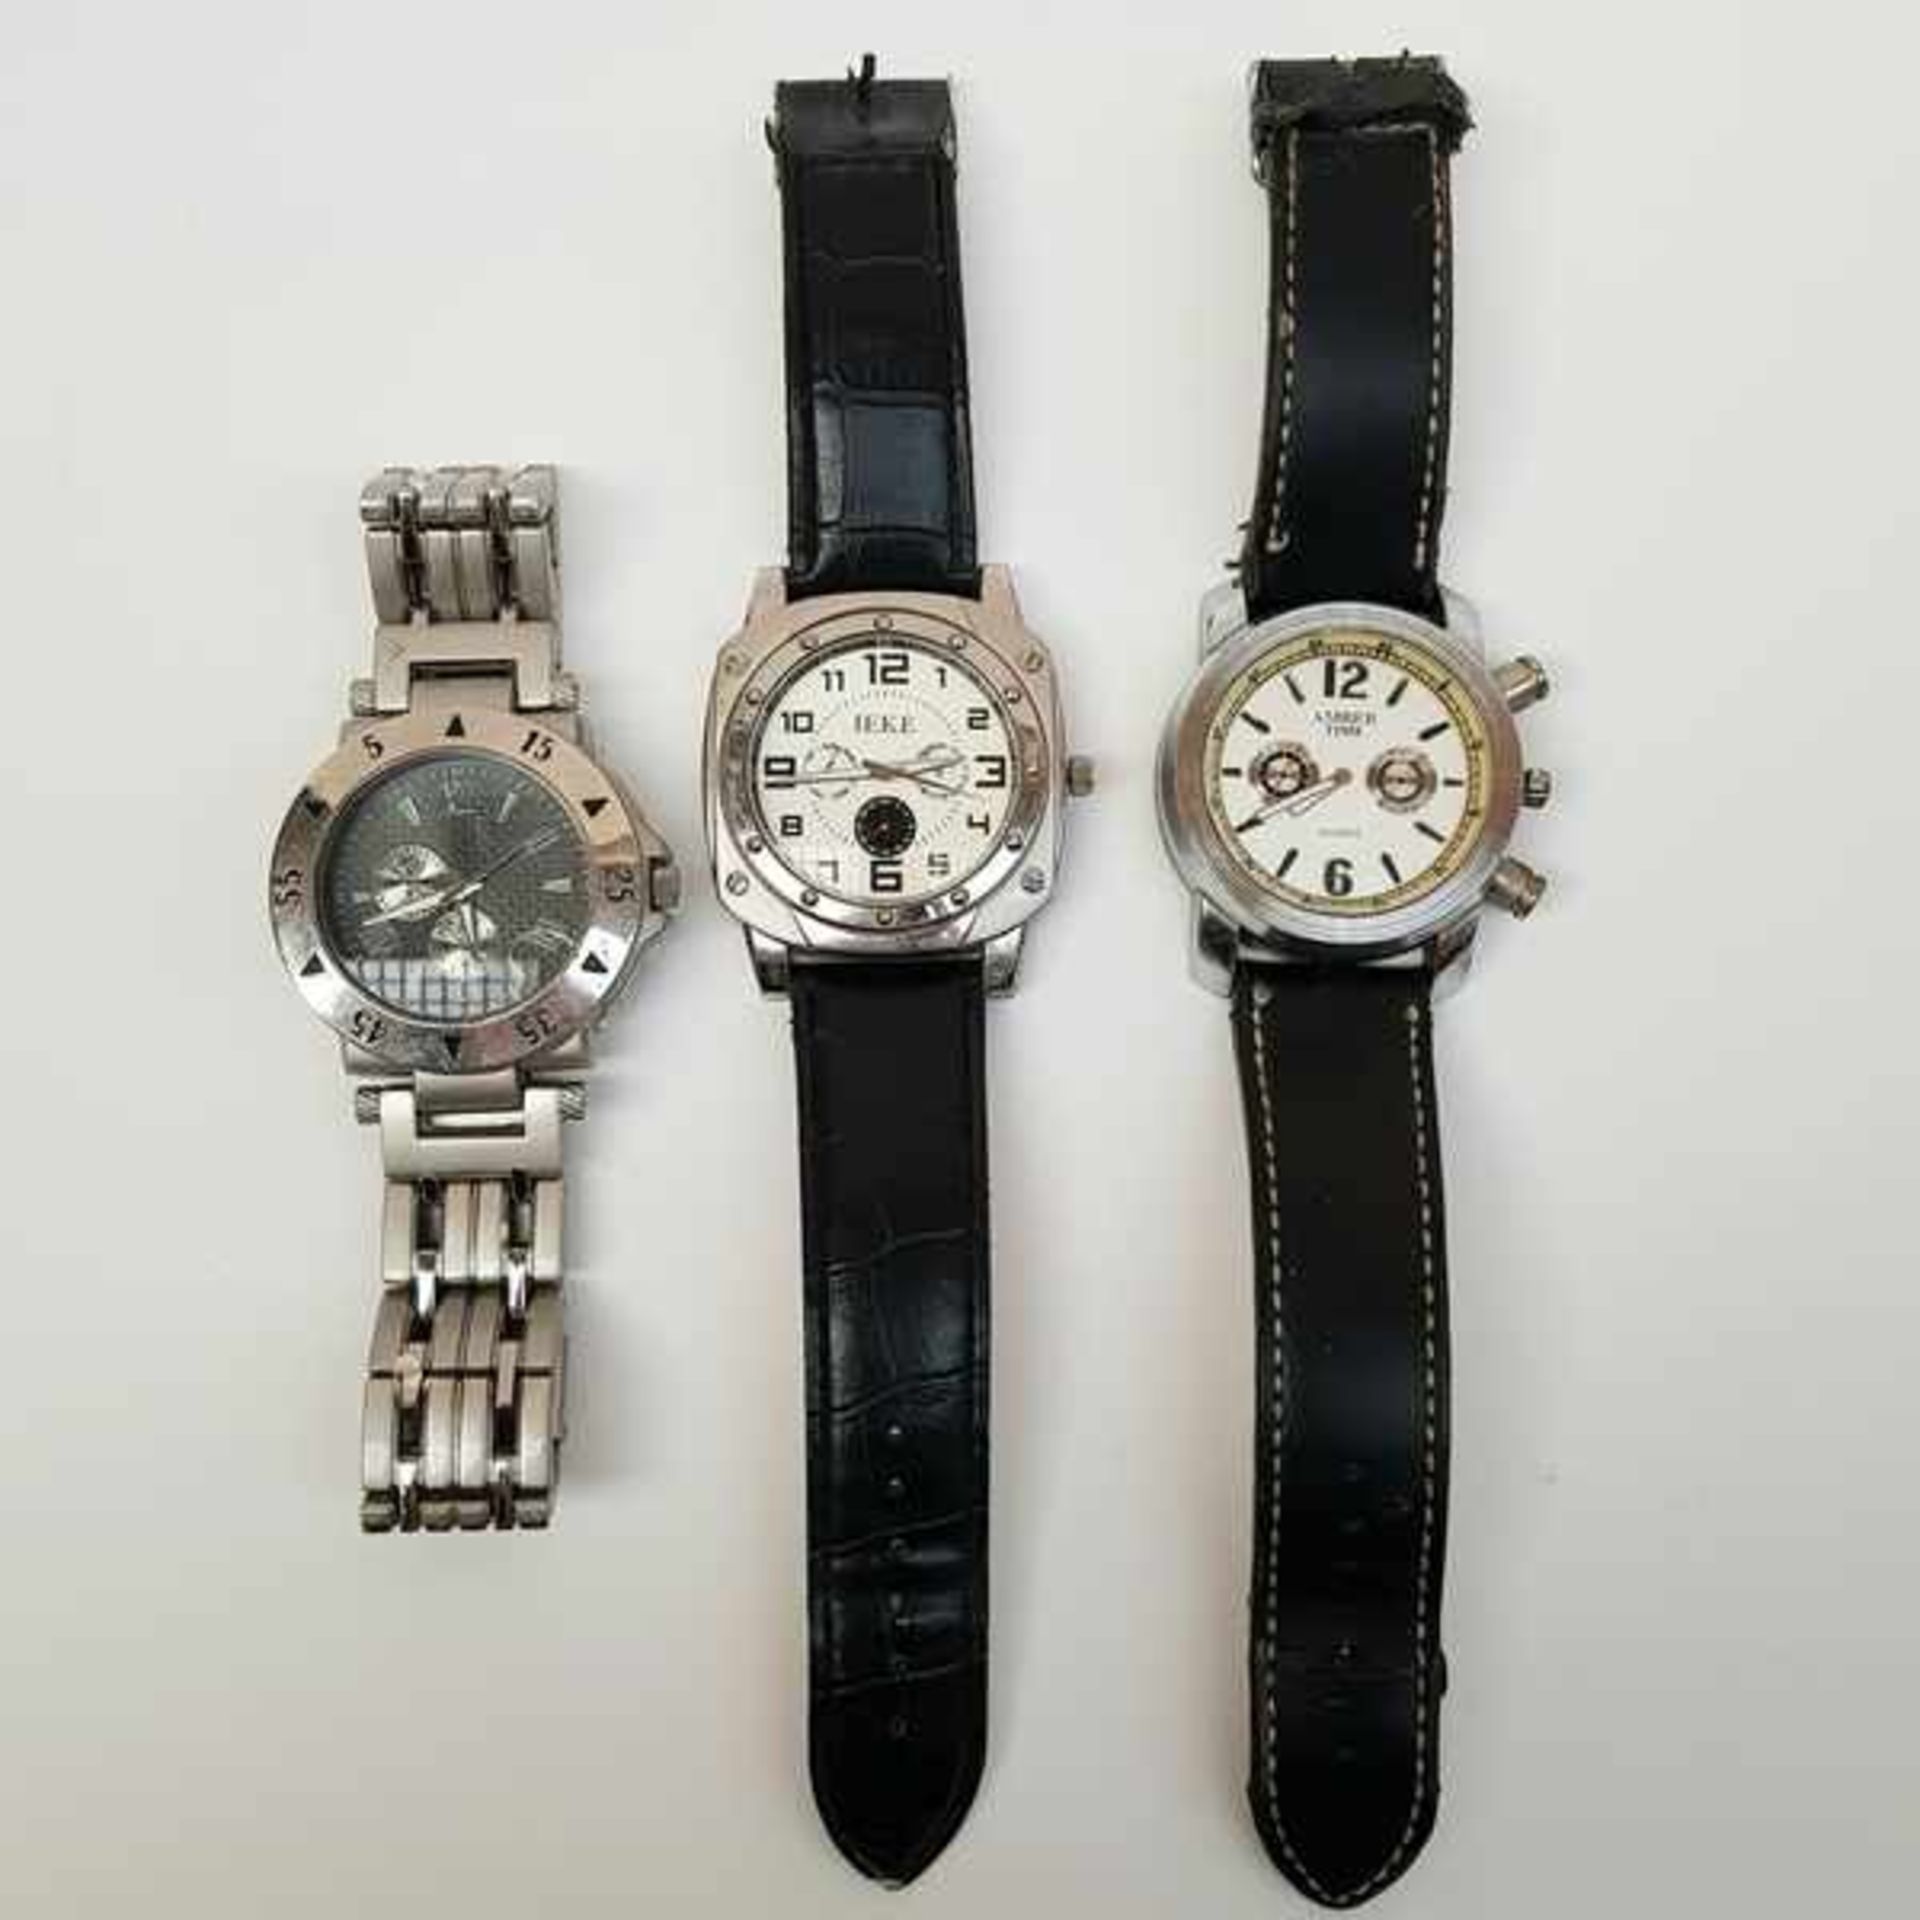 (Sieraden) HorlogesDrie heren Quartz horloges. Conditie: Beschadigingen. Afmetingen: Max. lengte